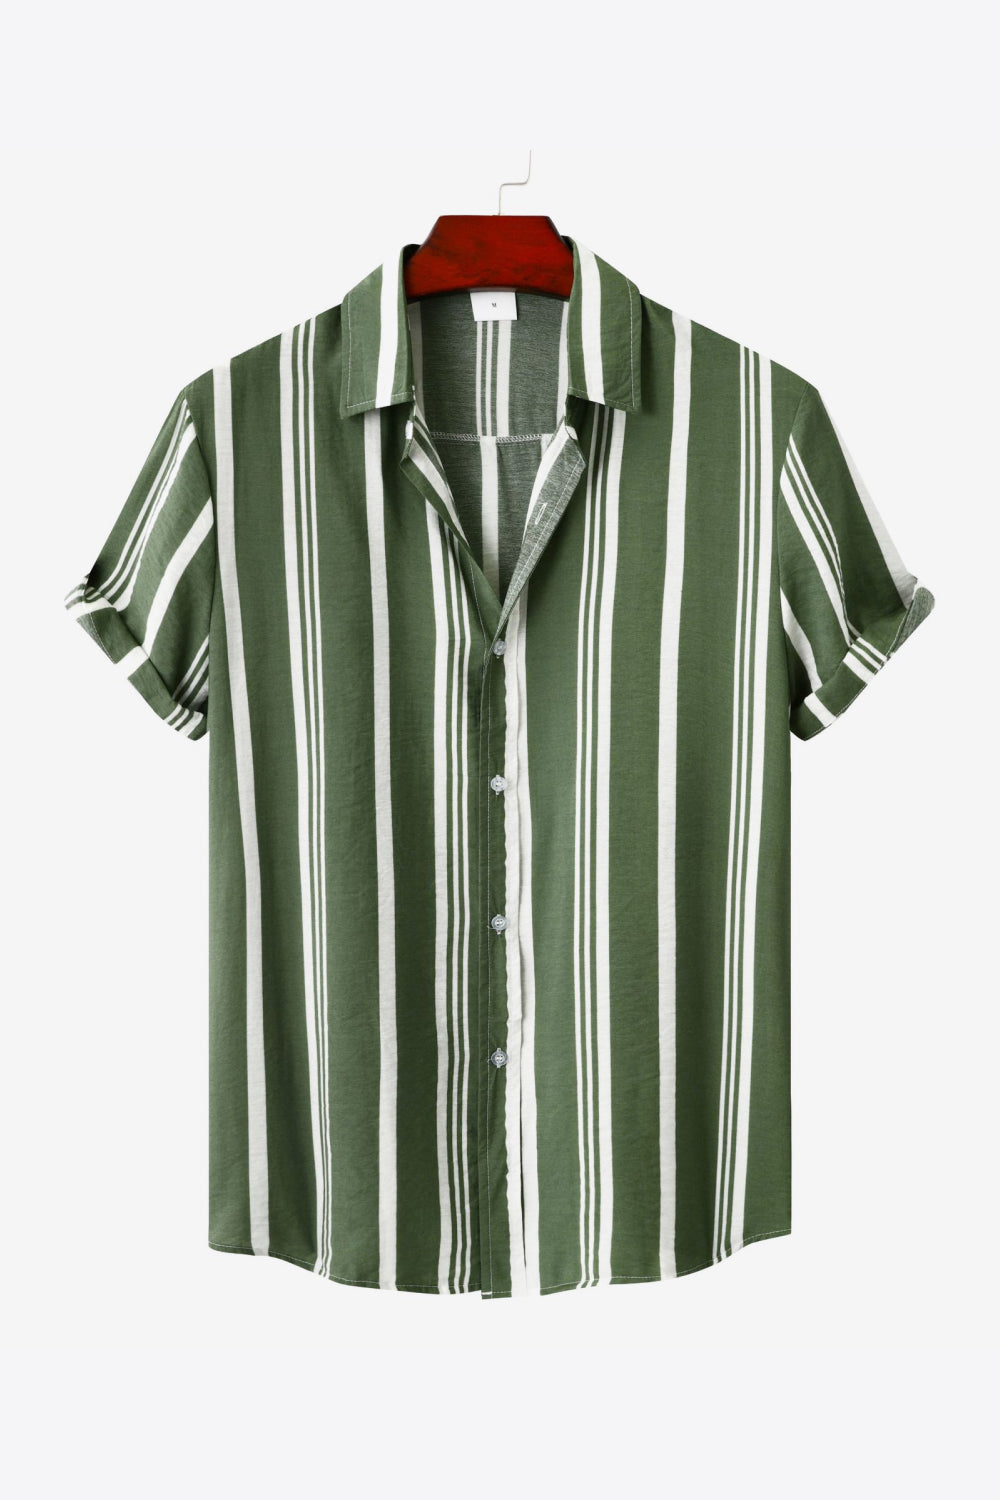 Striped Button-Up Short Sleeve Shirt